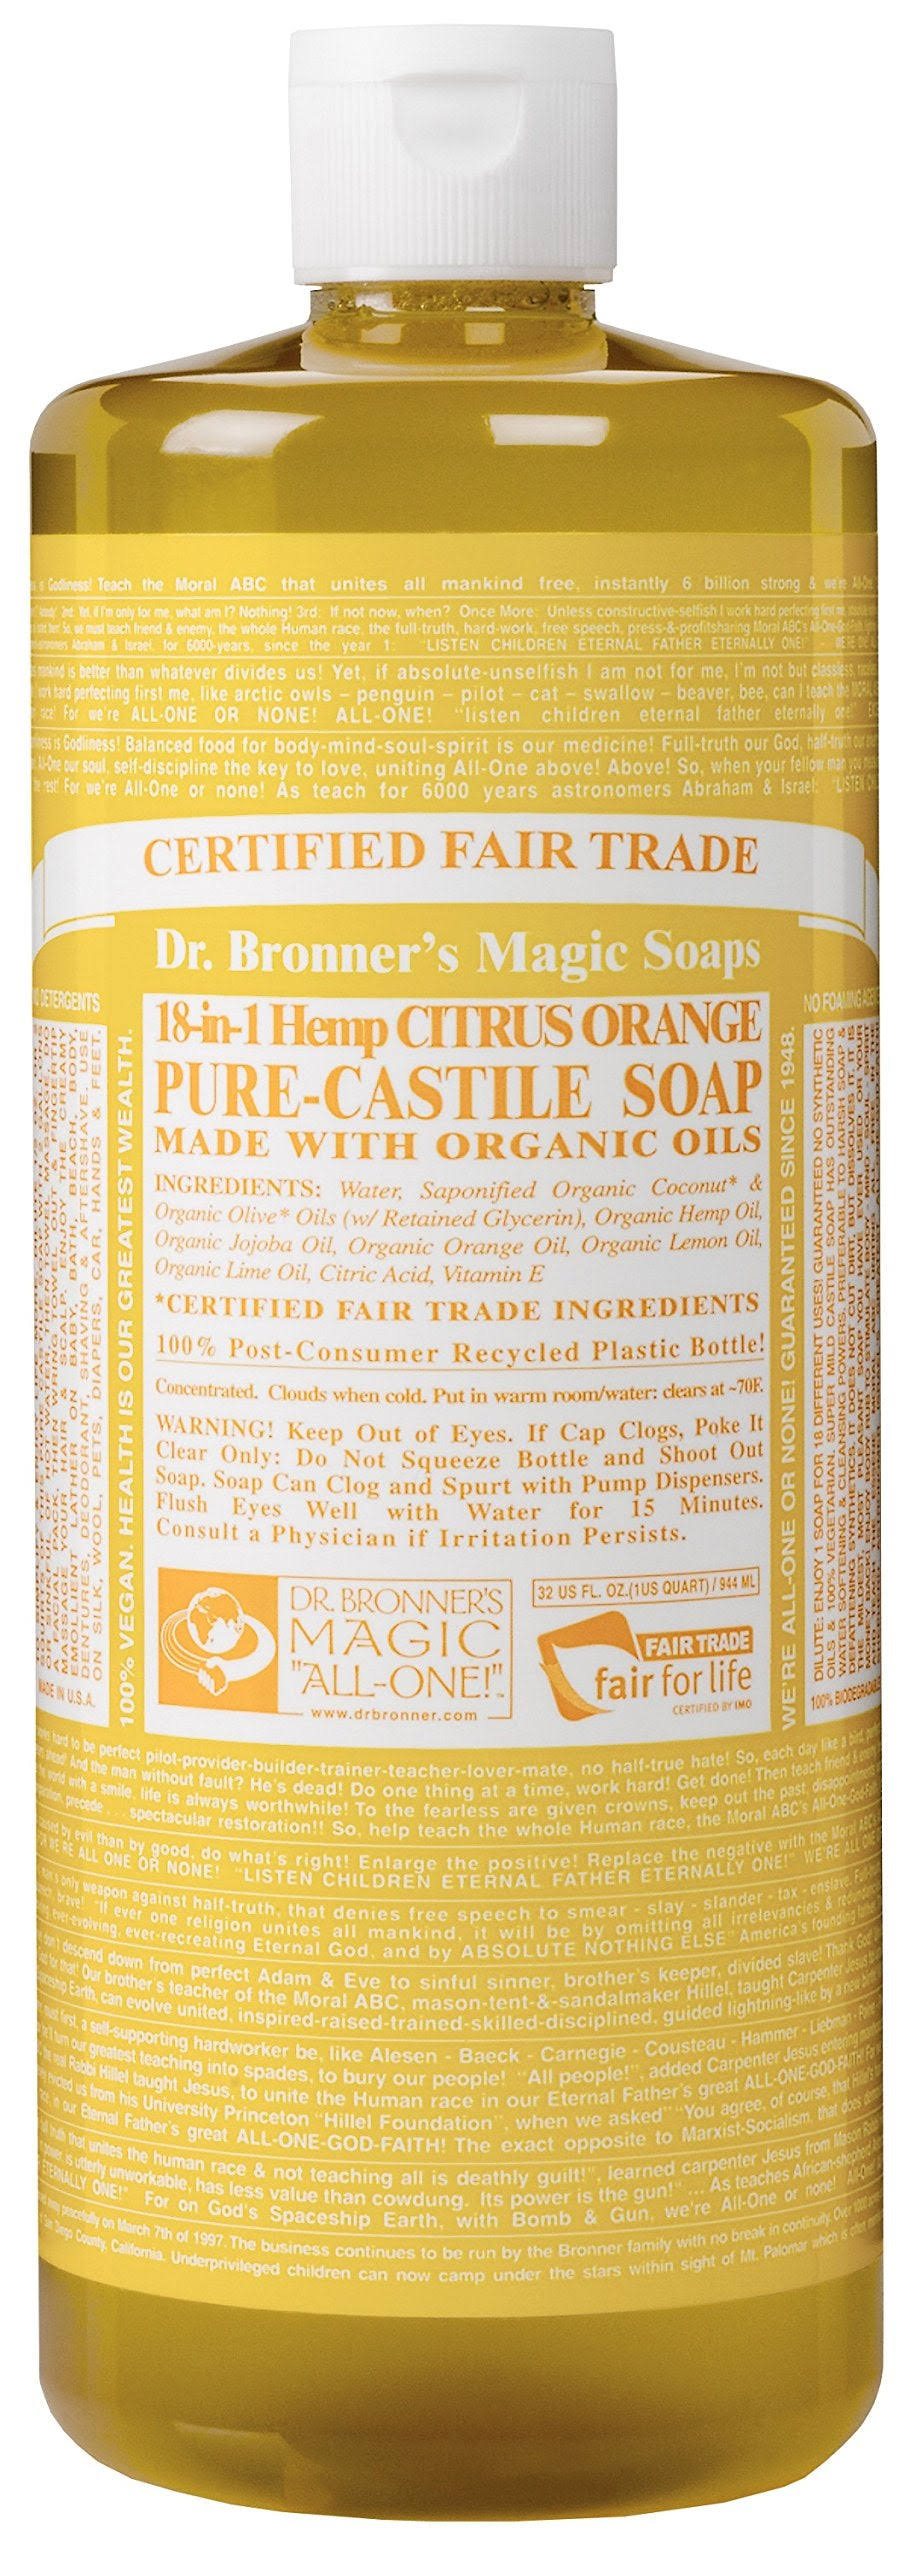 Dr. Bronner's Fair Trade & Organic Castile Liquid Soap - Citrus